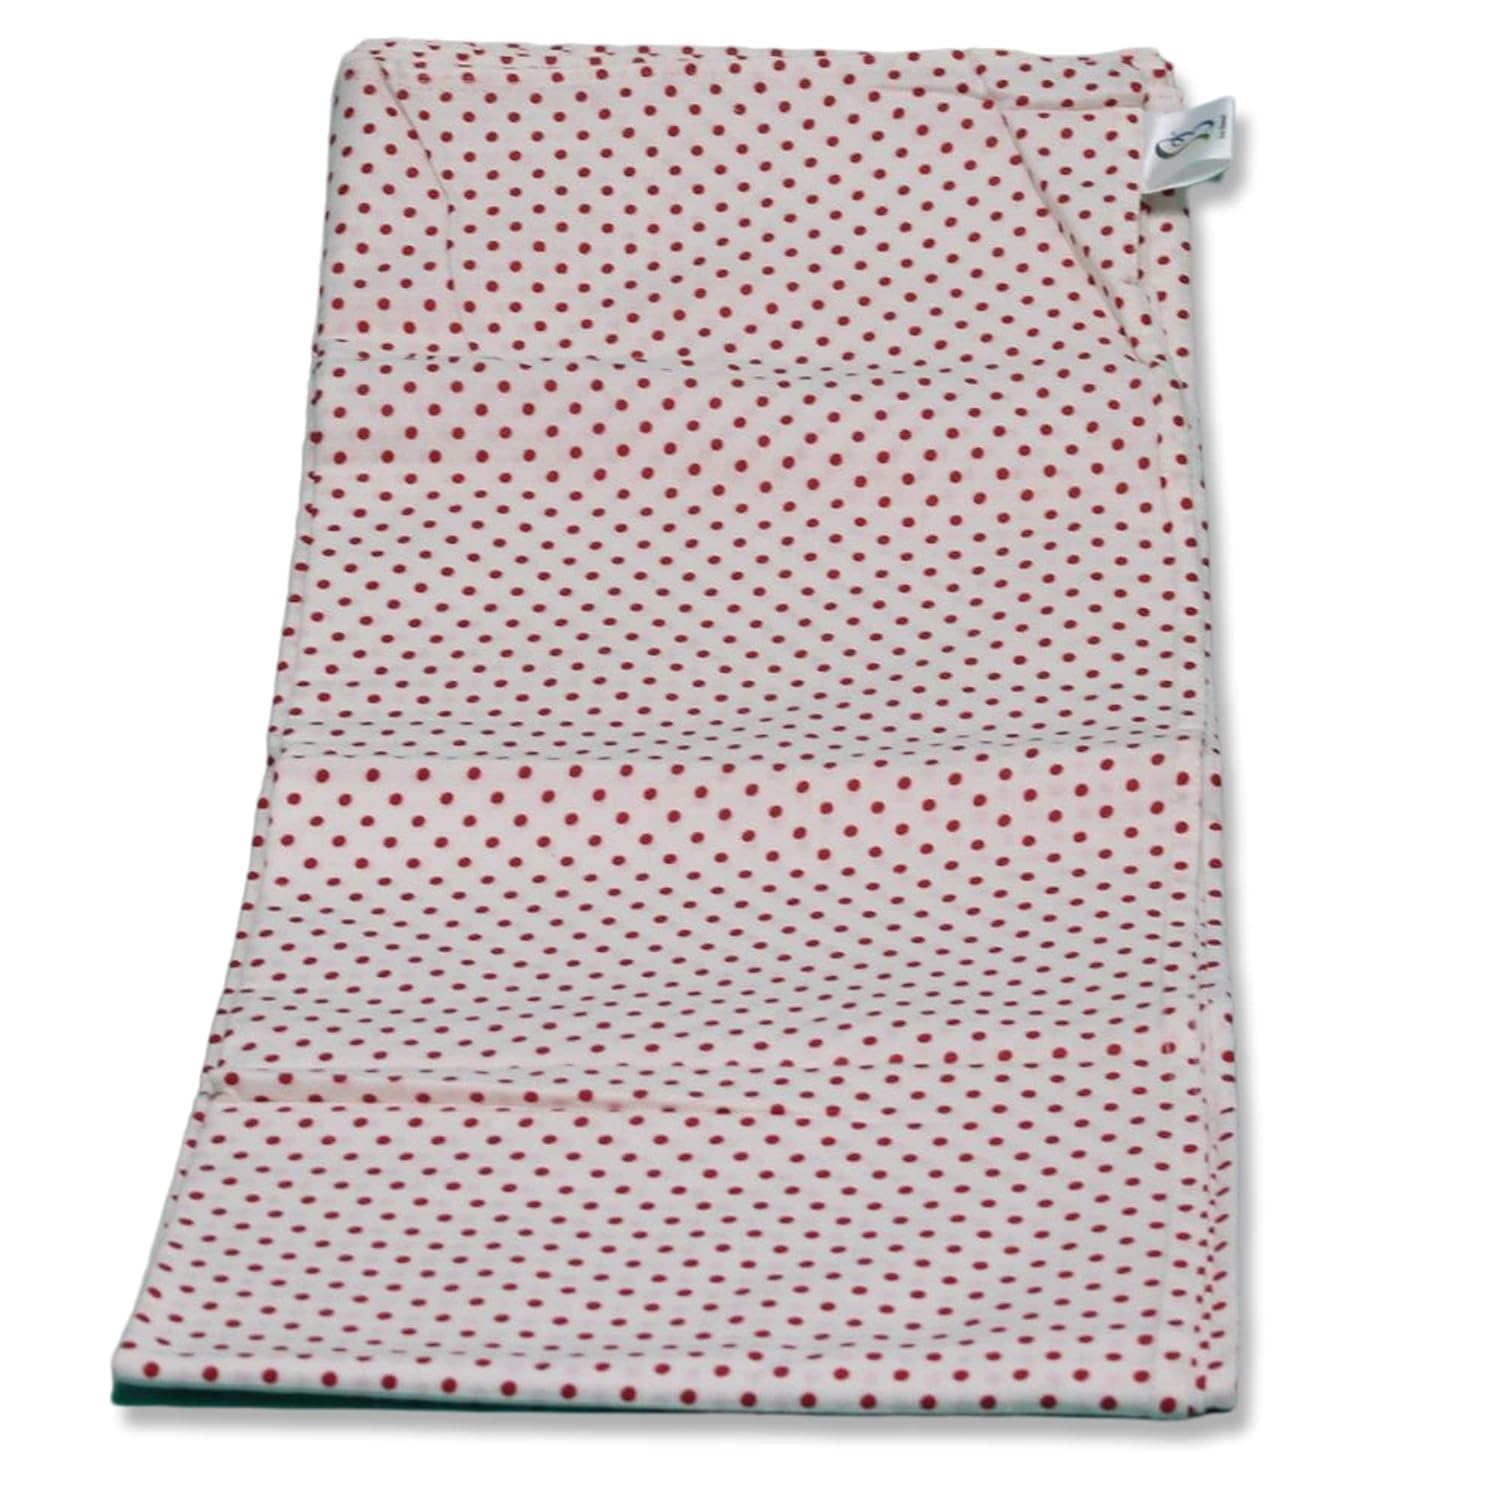 Cradle Cloth Dots Set Cloth With Net (Medium)